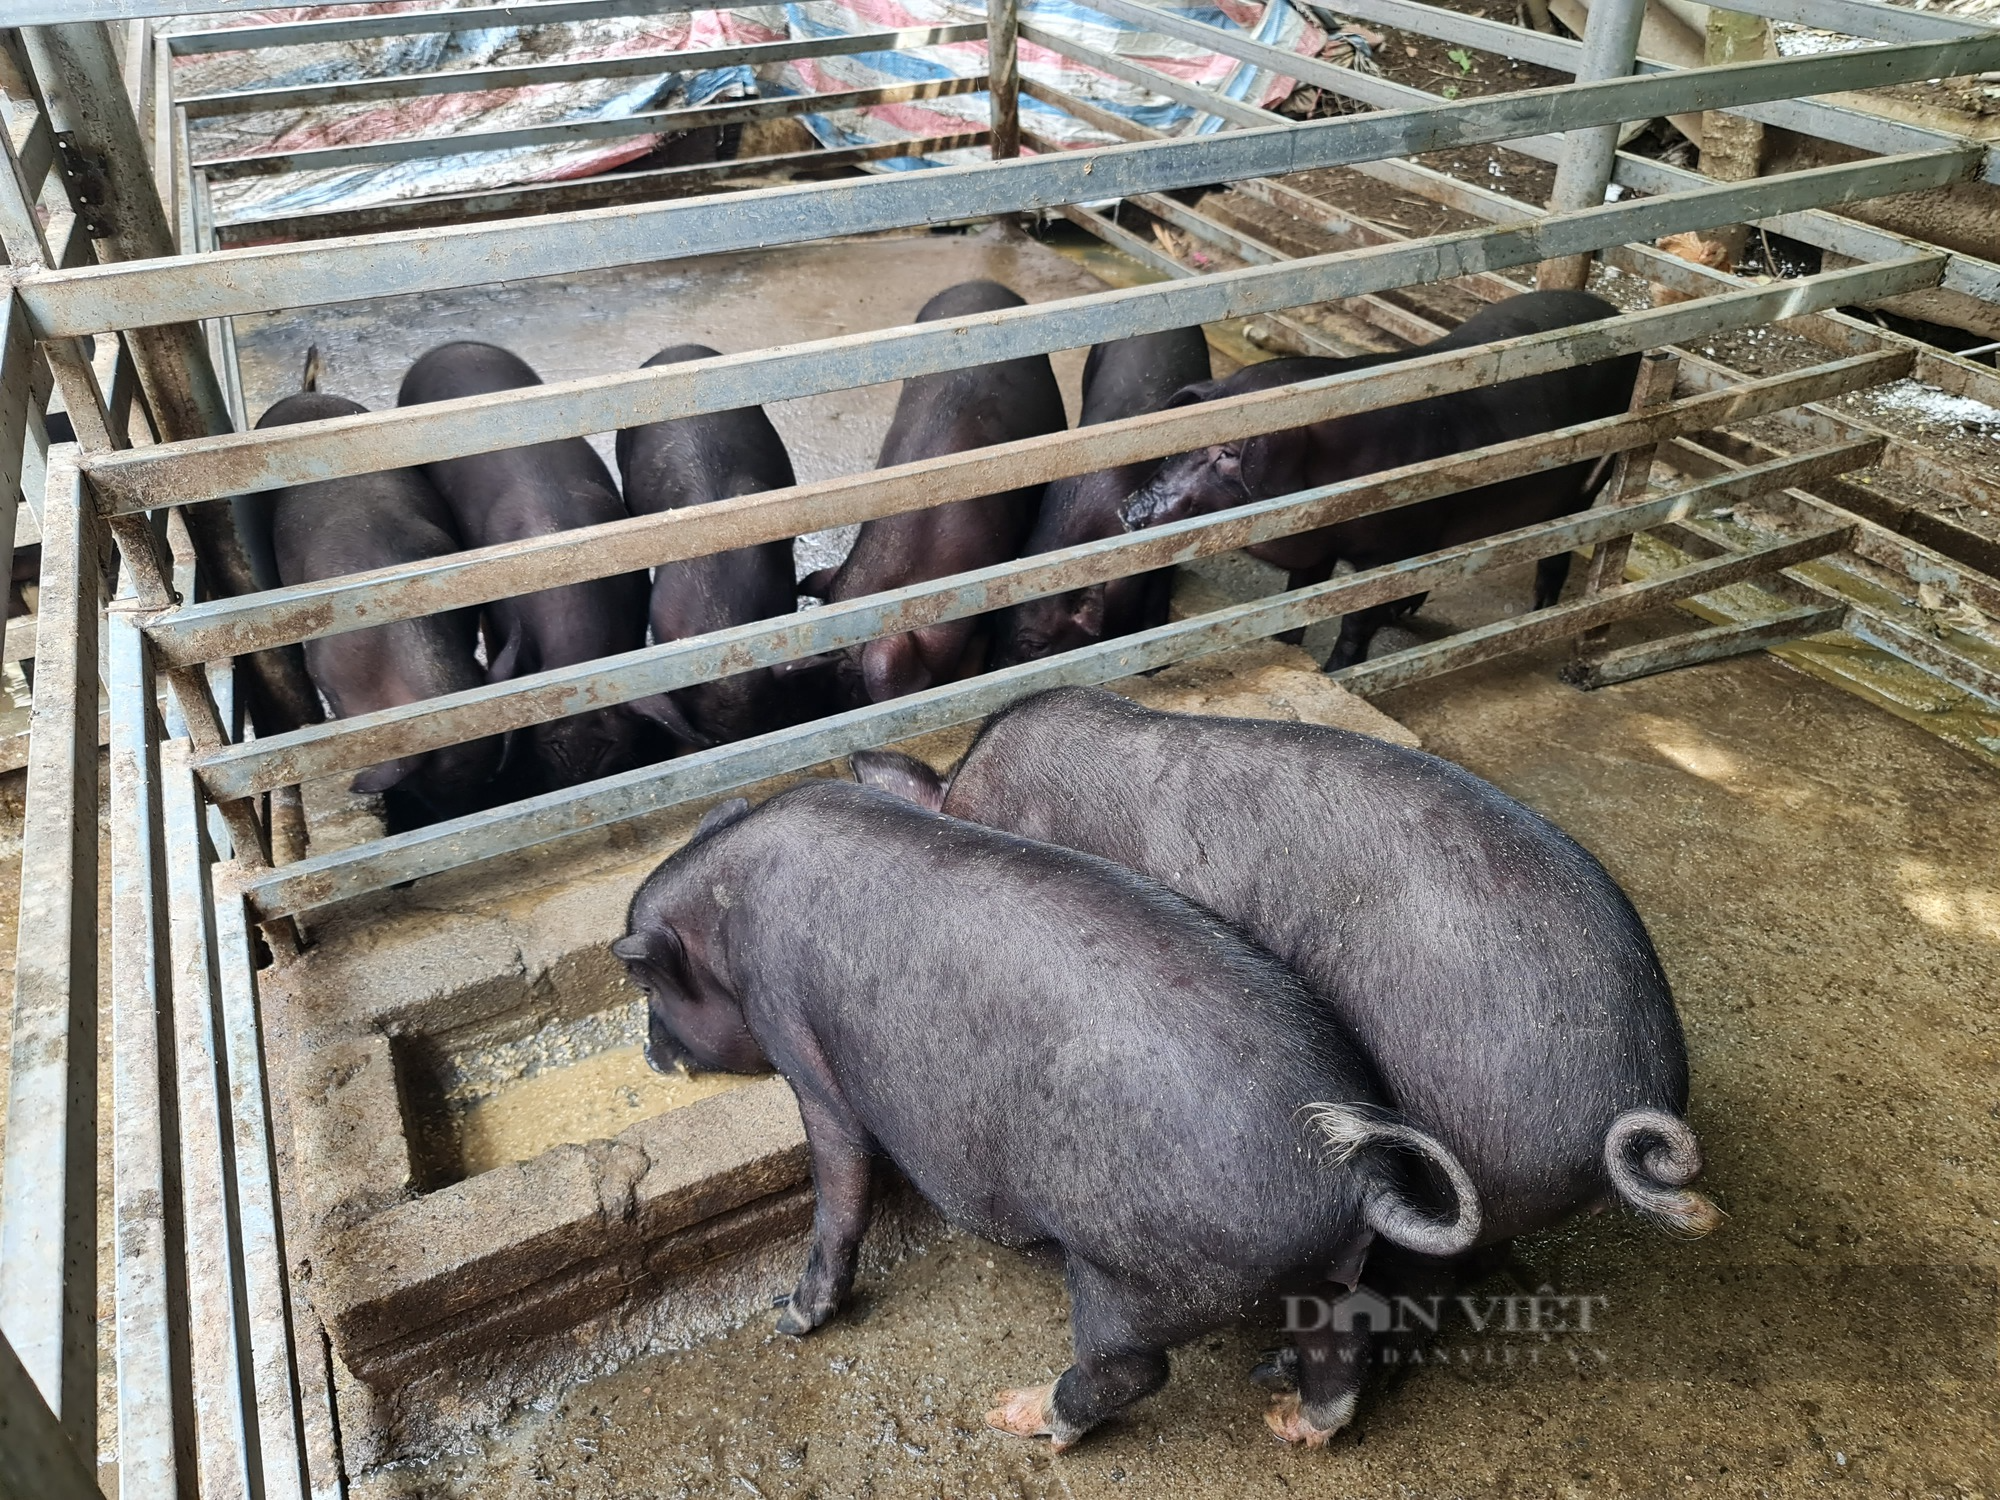 Nuôi lợn mán, ăn rau rừng một nông dân ở Điện Biên thu hơn 500 triệu/năm - Ảnh 3.